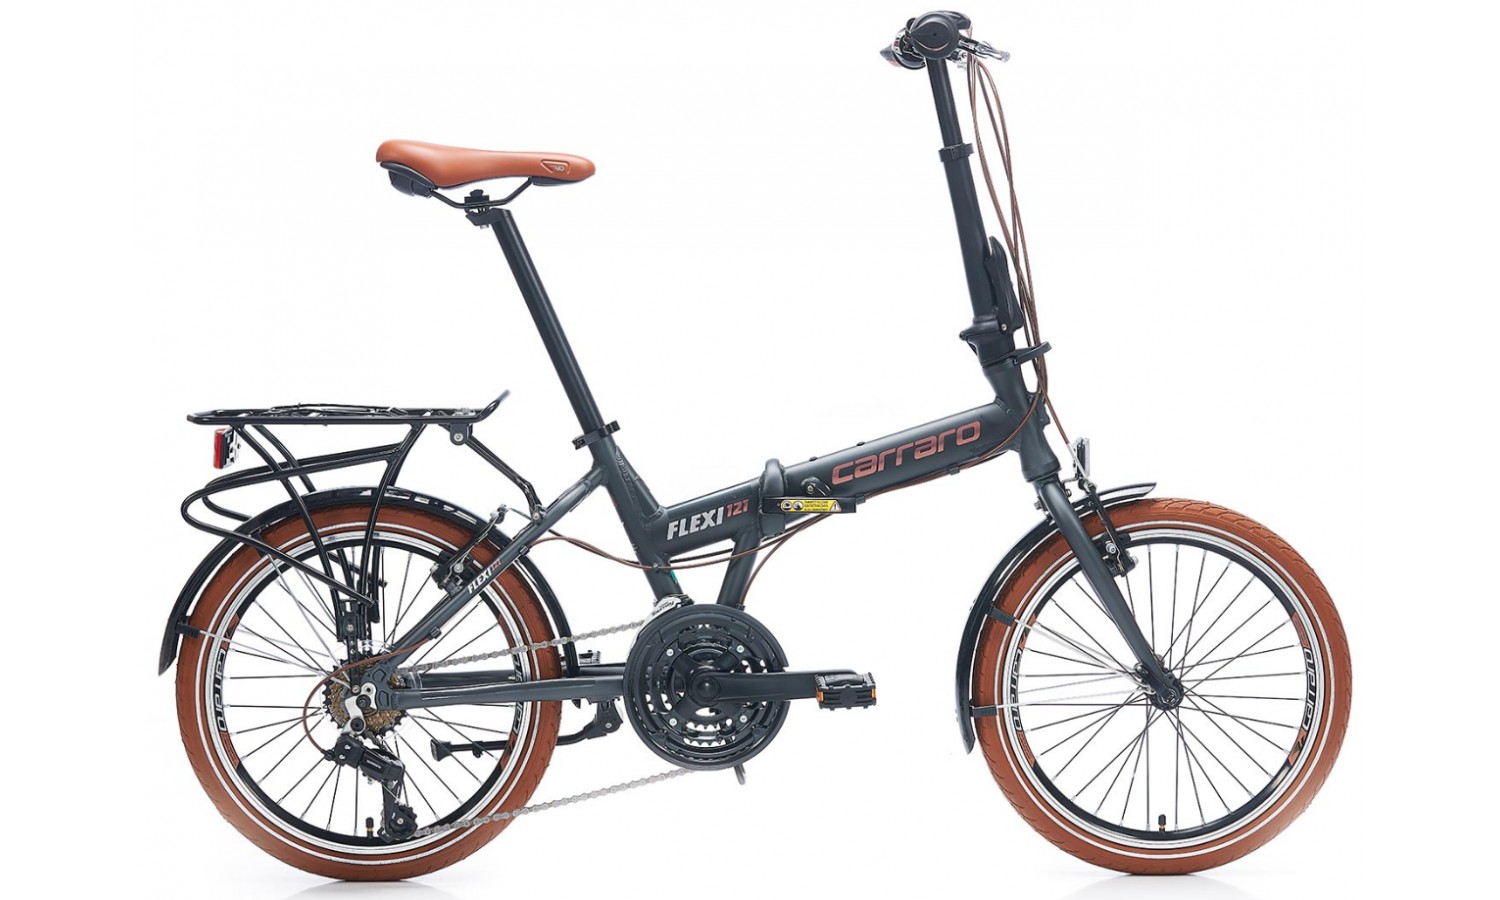 Carraro Flexi 121 20 V Katlanır Bisiklet (Mat Haki Siyah Bakır)